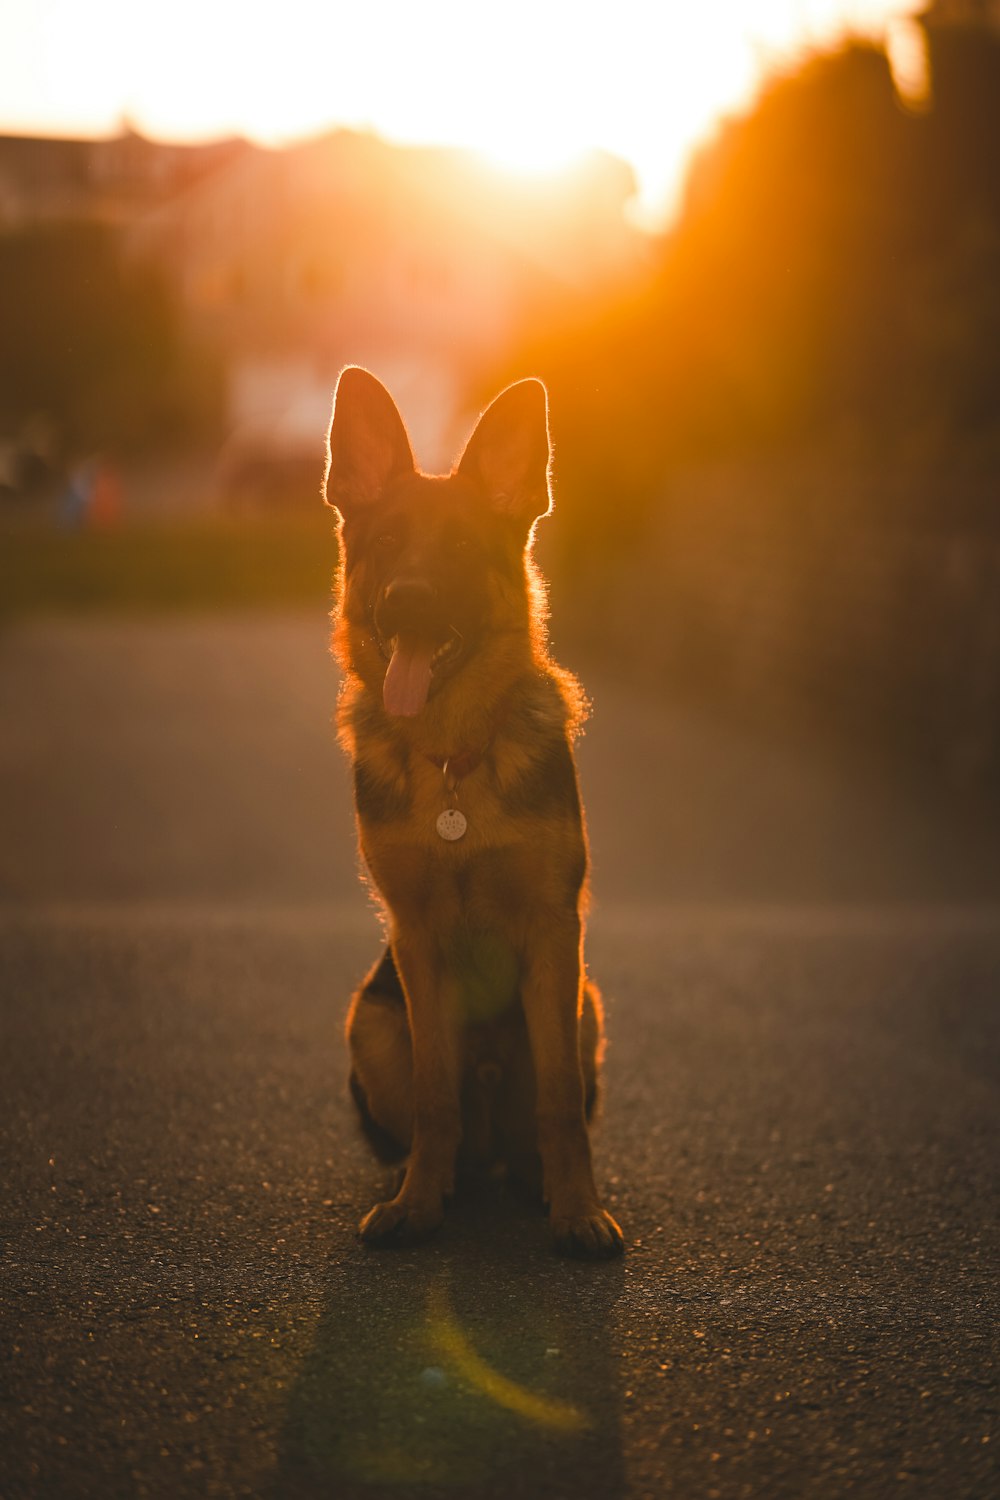 brown and black short coated dog on gray asphalt road during sunset